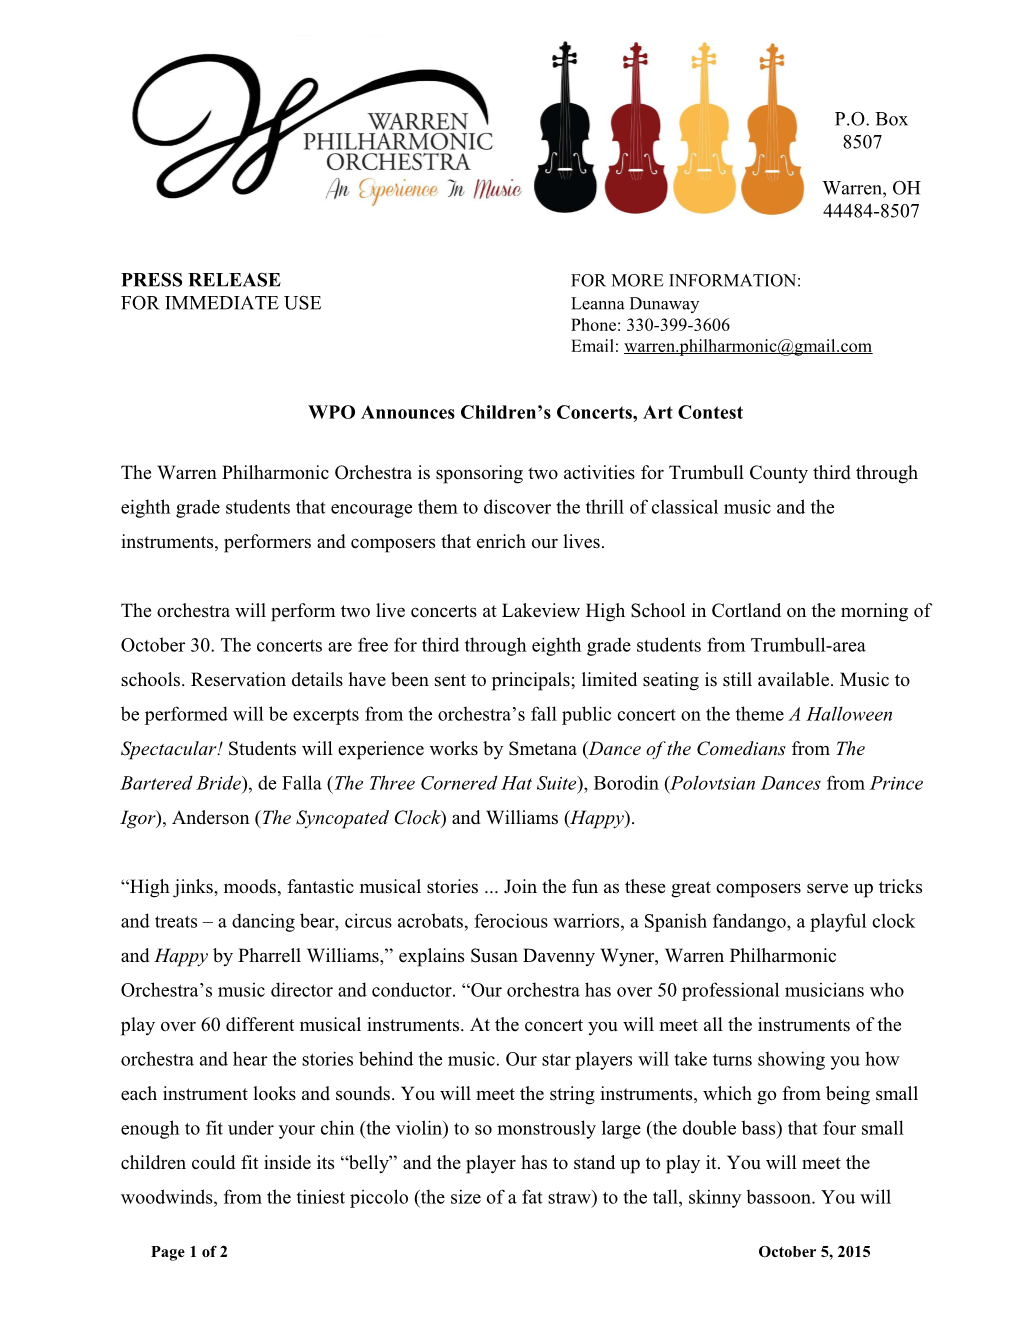 WPO Press Release: WPO Announces Children S Concerts, Art Contest